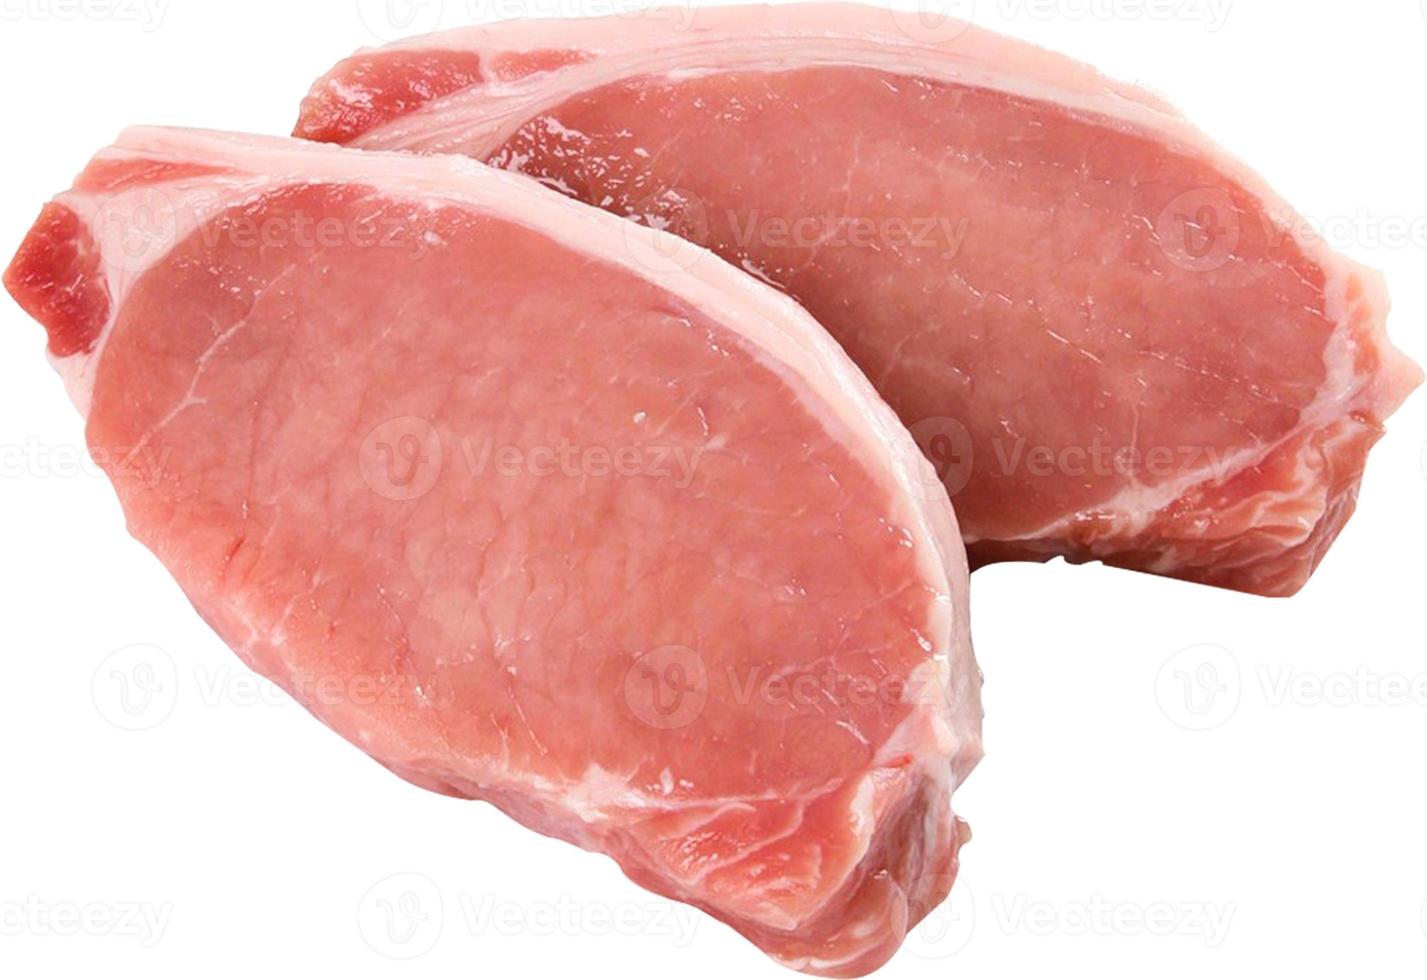 filé de carne de porco de carne crua isolado no fundo branco foto